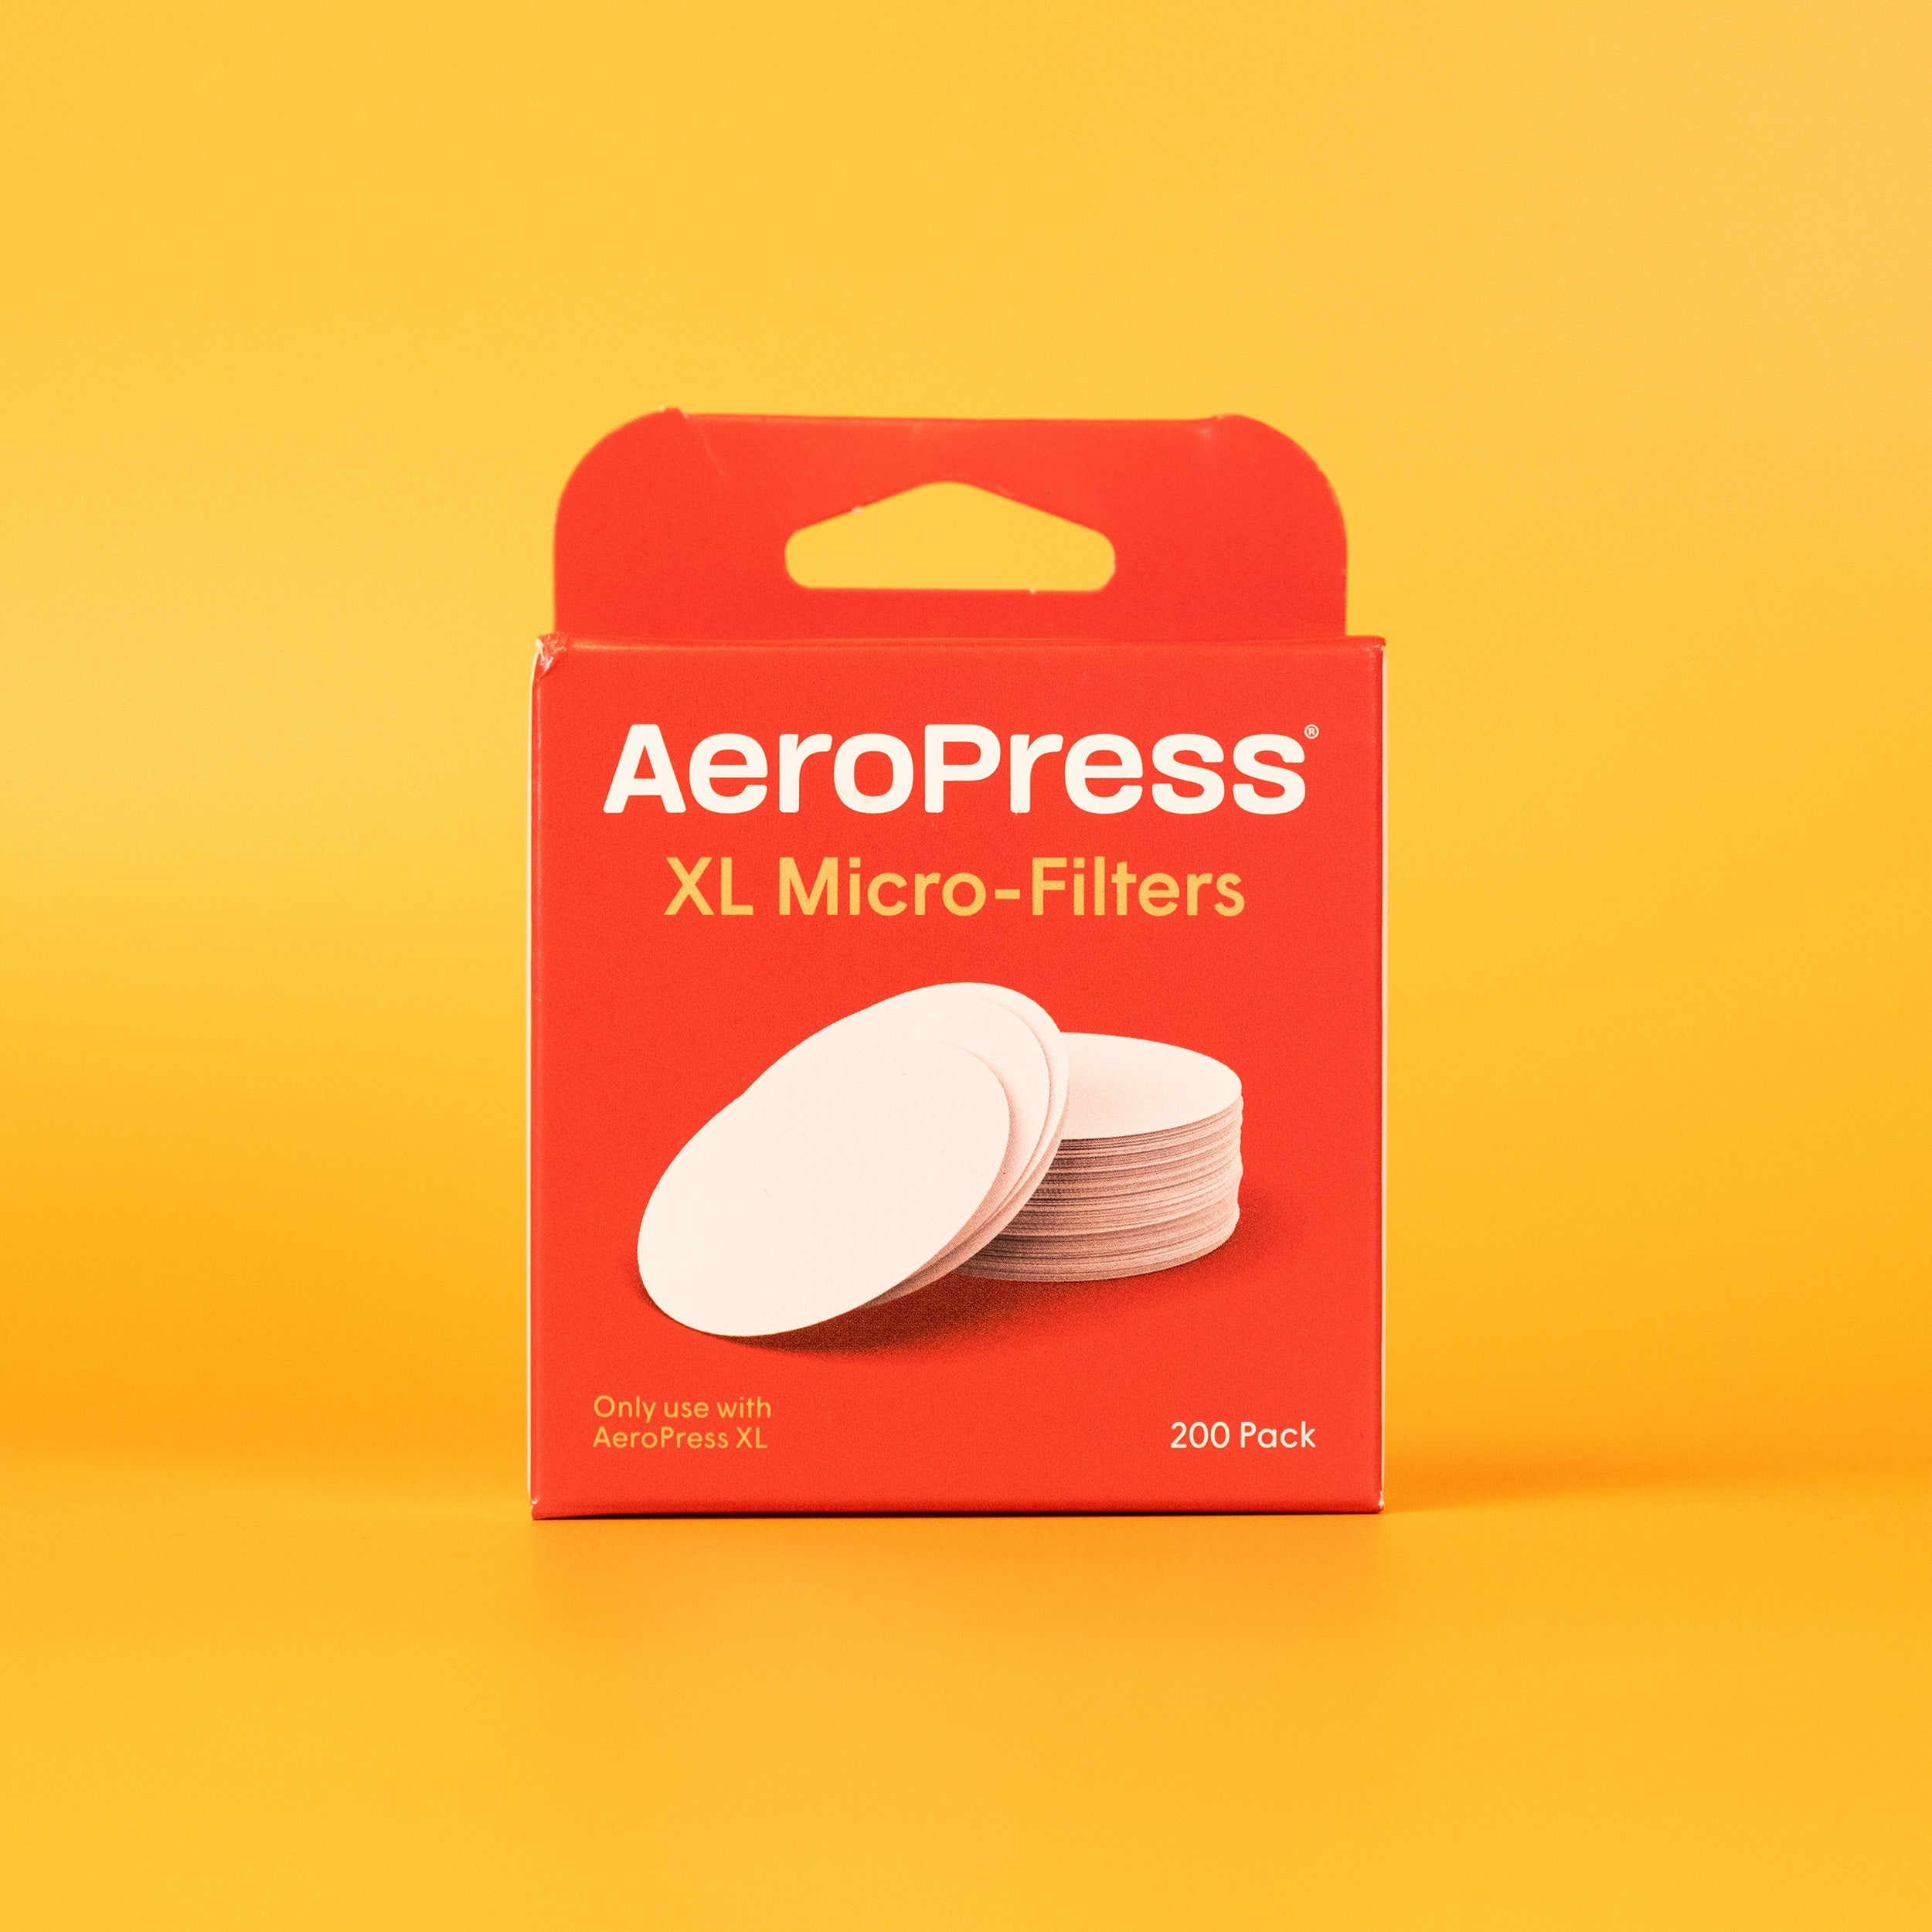 XL Aeropress Filters